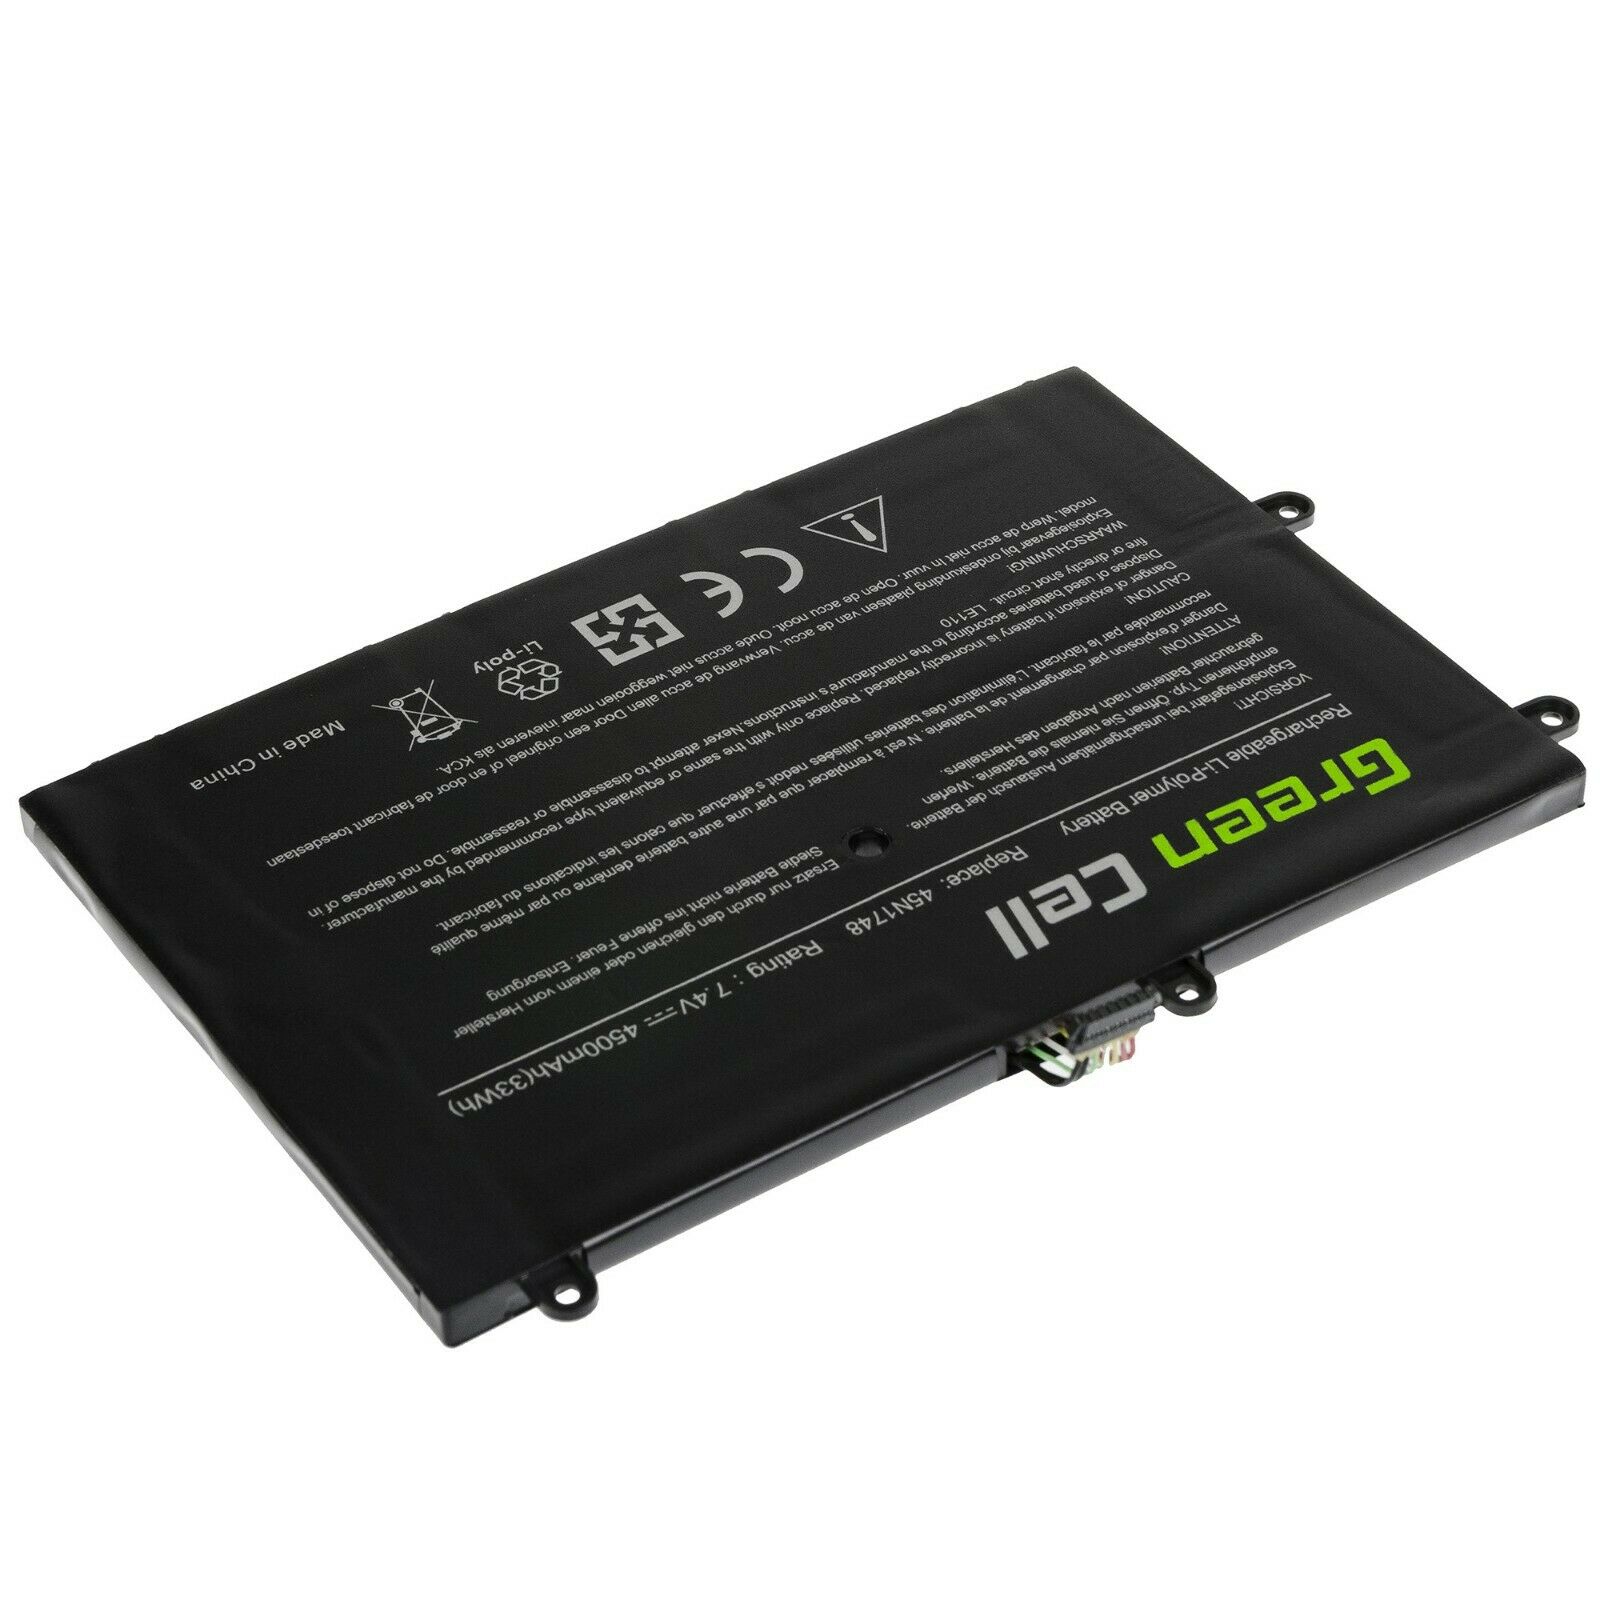 μπαταρία για Lenovo ThinkPad 11e (20D9/20DA), 45N1748, 45N1749, 45N1750, 45N1751 συμβιβάσιμος